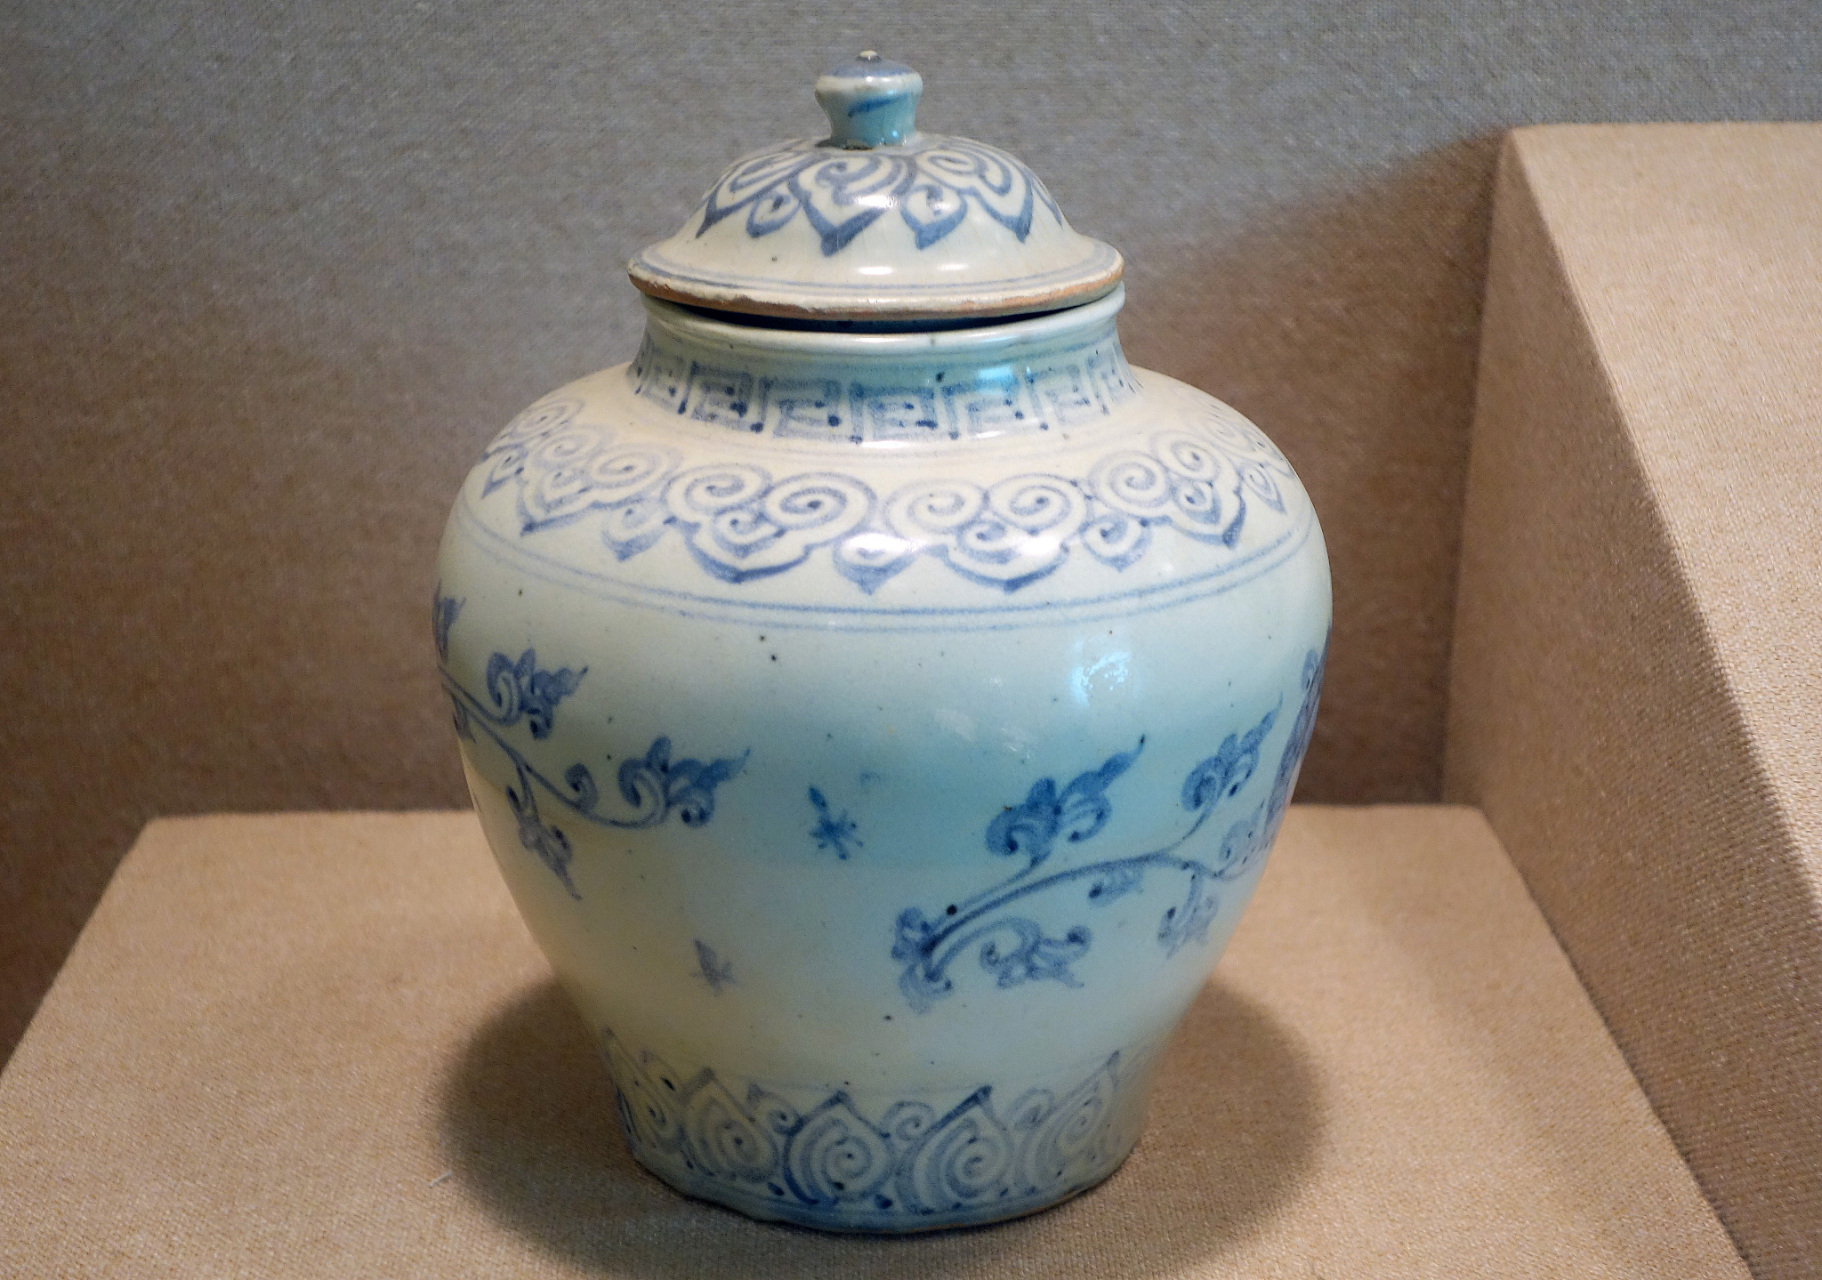 清朝时期酒坛子呈现多样化,有陶坛,瓷坛,竹筒和木桶等